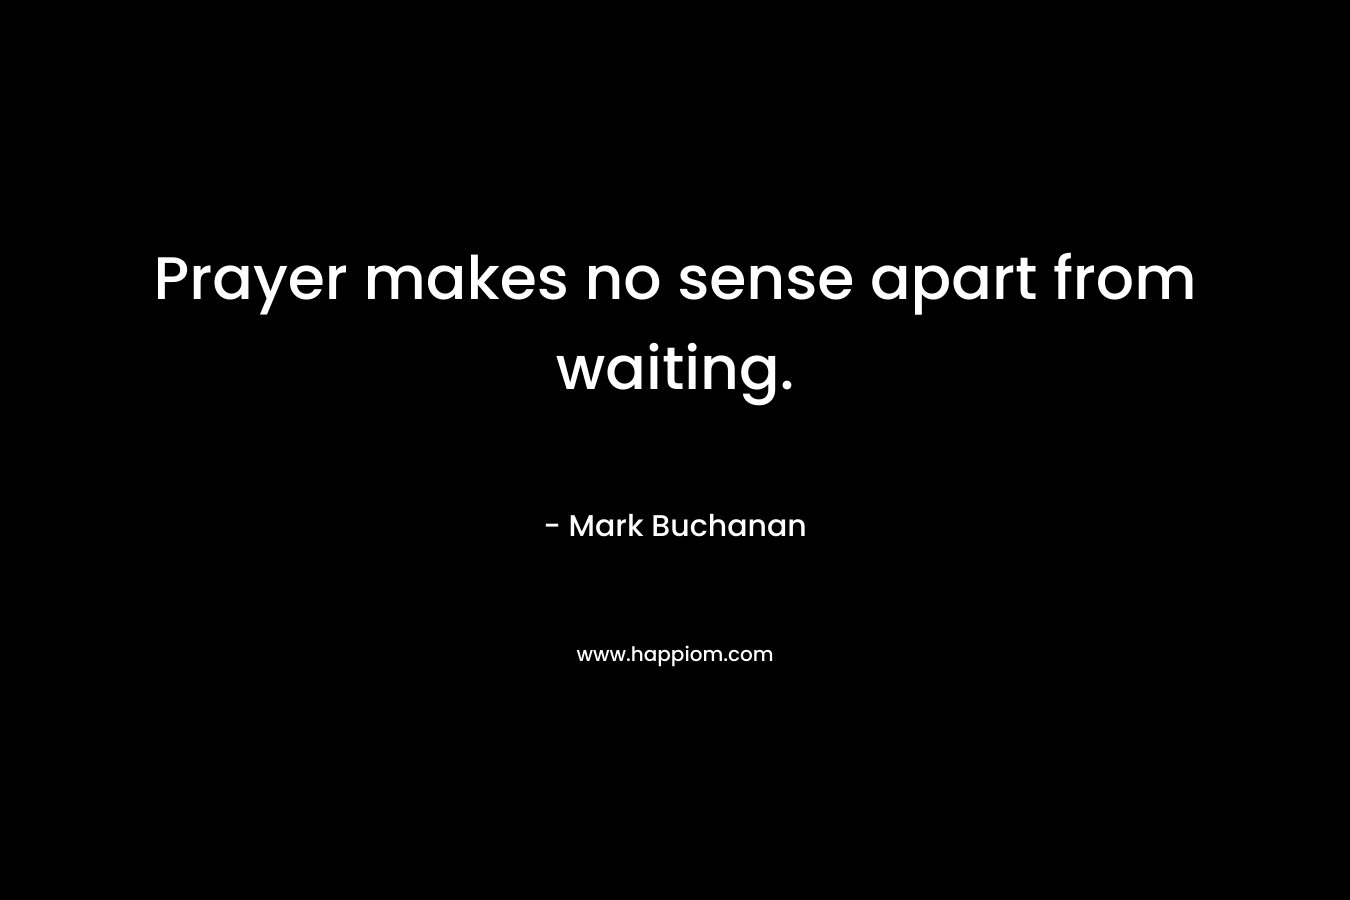 Prayer makes no sense apart from waiting.